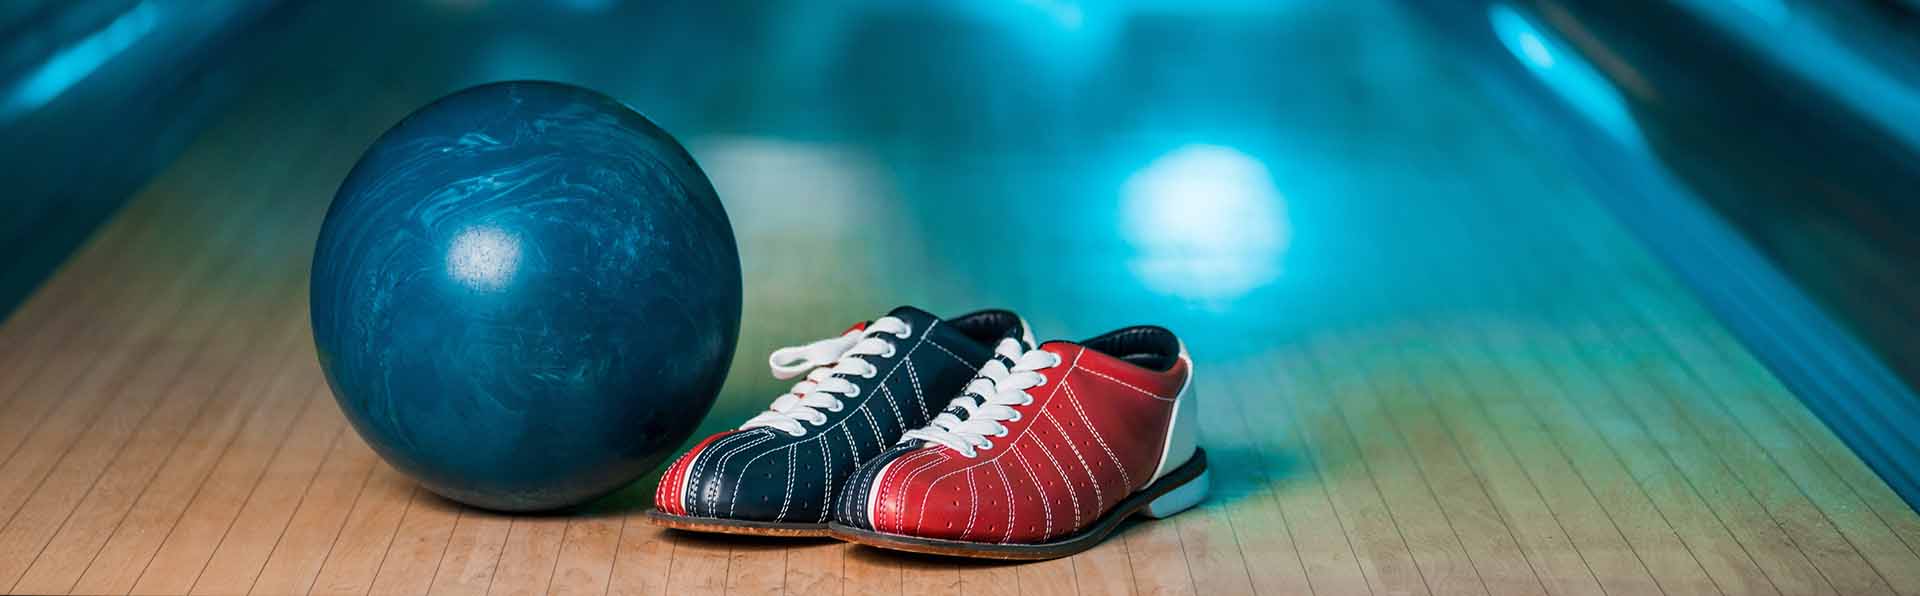 Bowlingklot och skor står på en bowlingbana